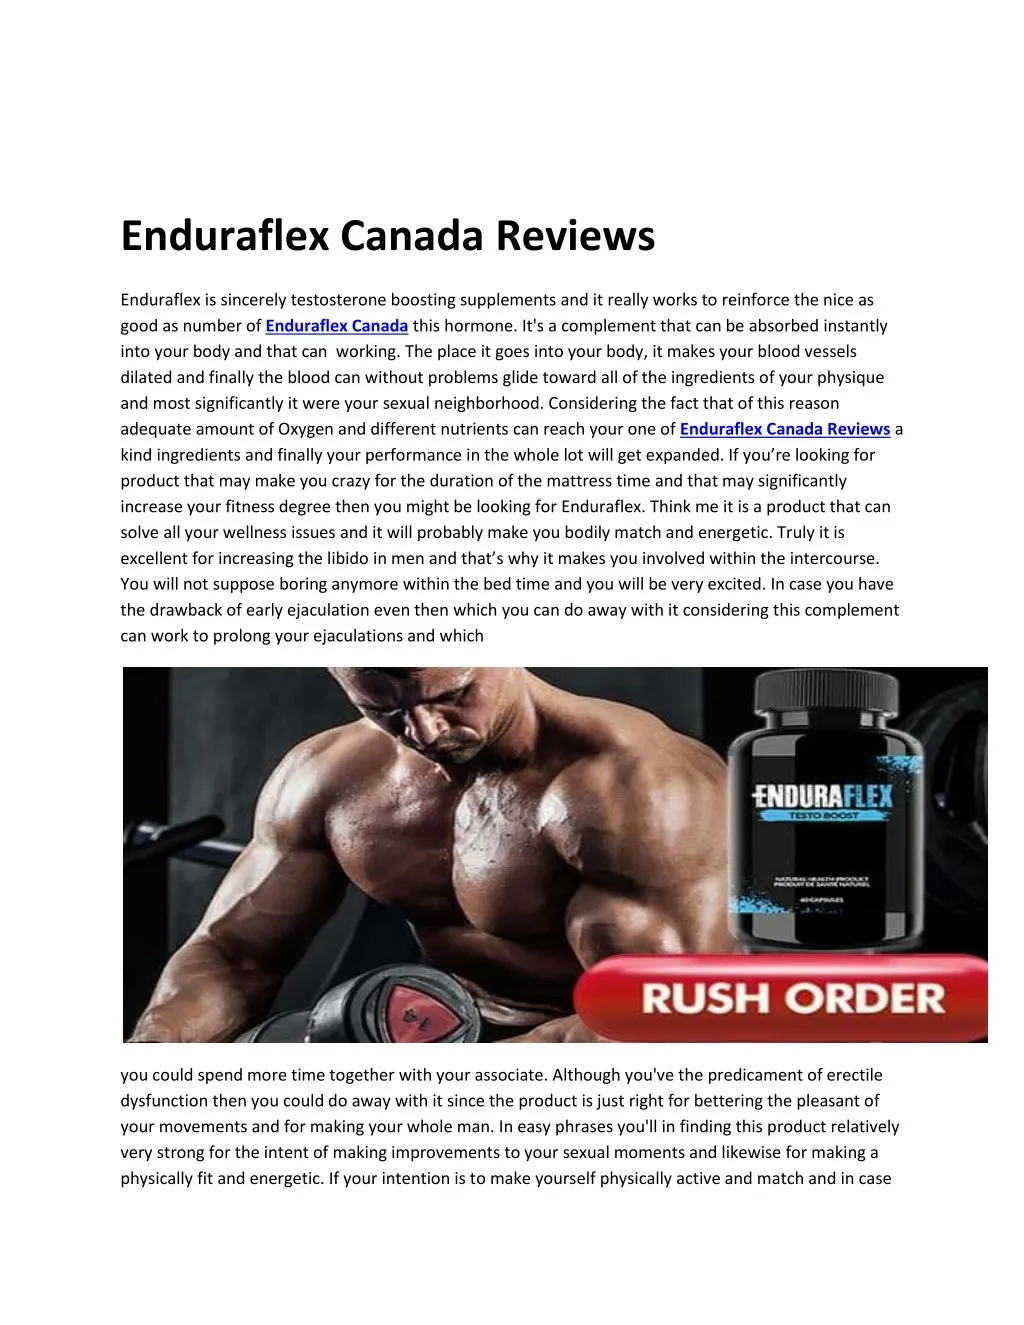 enduraflex canada reviews